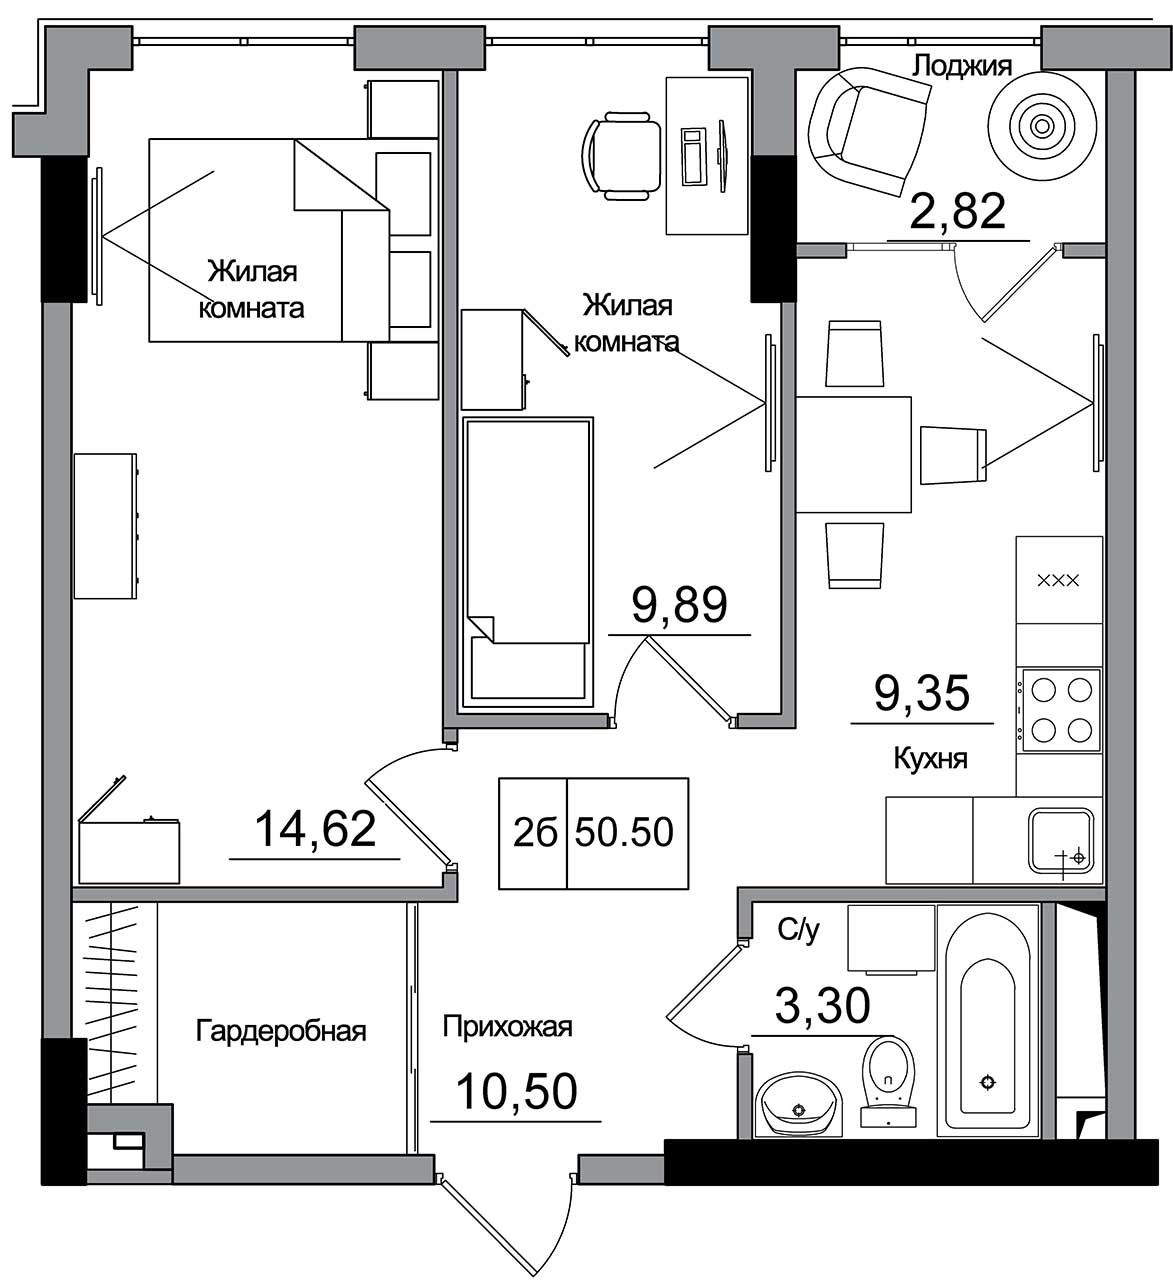 Планировка 2-к квартира площей 50.5м2, AB-16-08/00007.